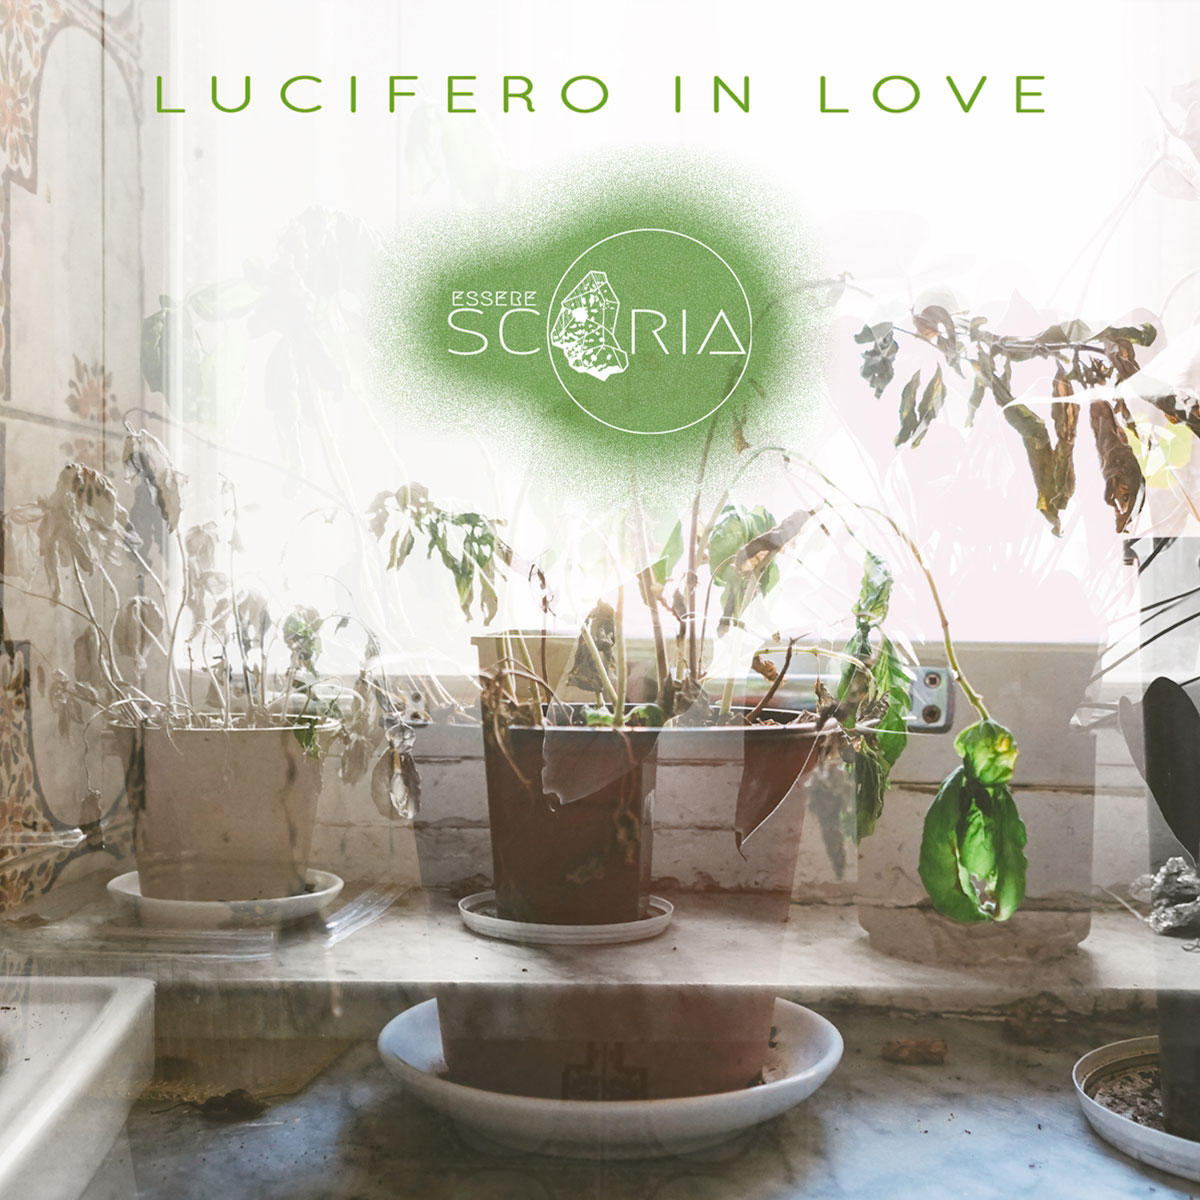 Al momento stai visualizzando “Lucifero In Love” è il singolo d’esordio di Esserescoria